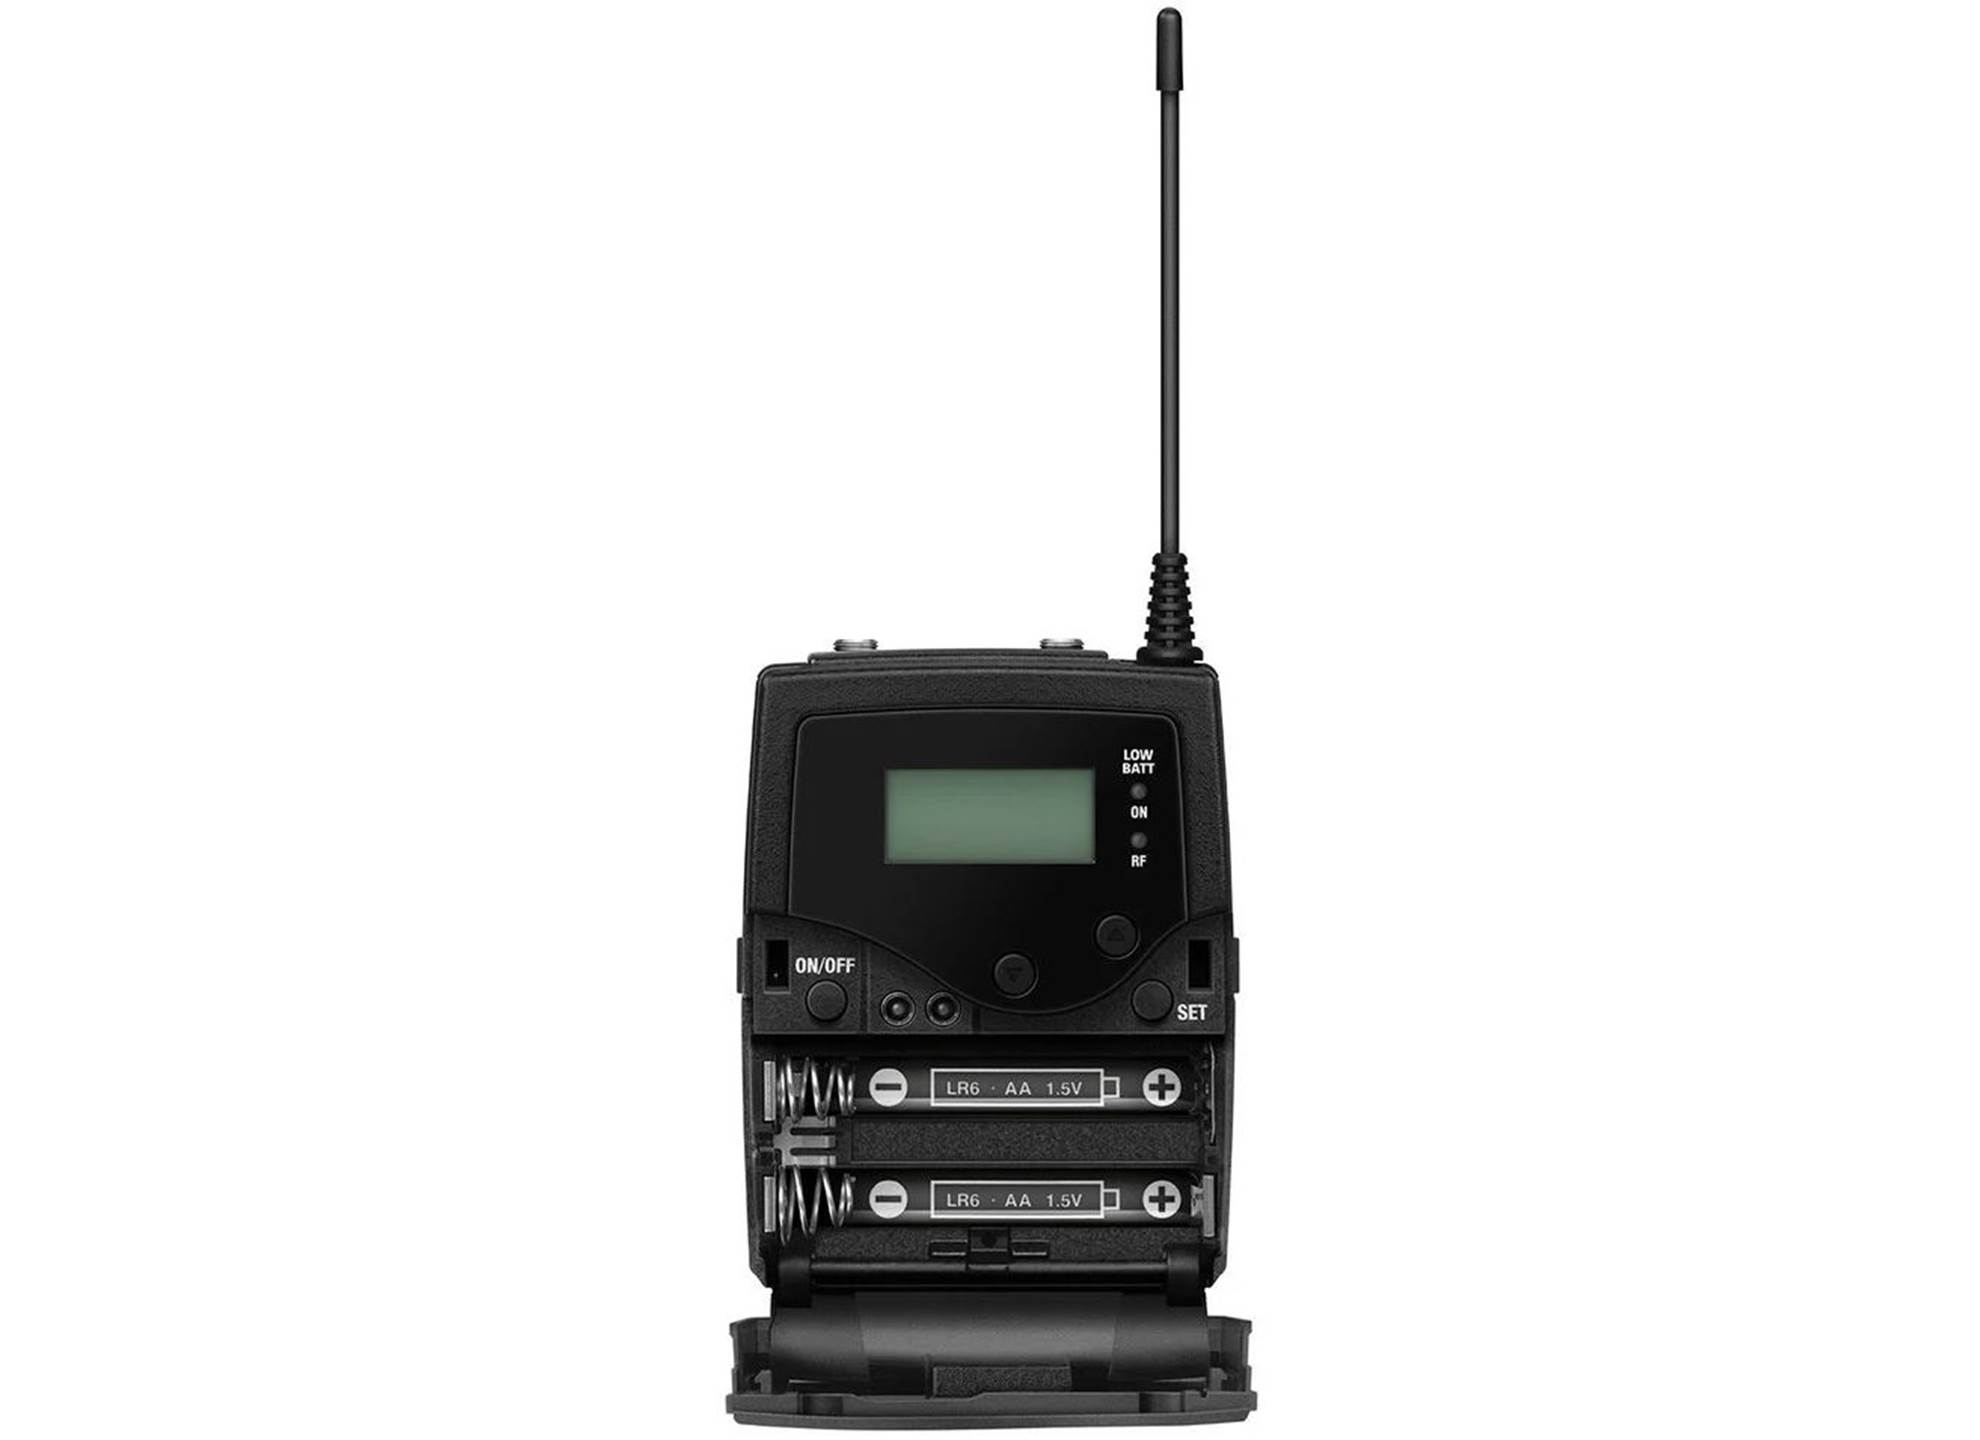 EK 500 G4-GBW 606 - 678 MHz